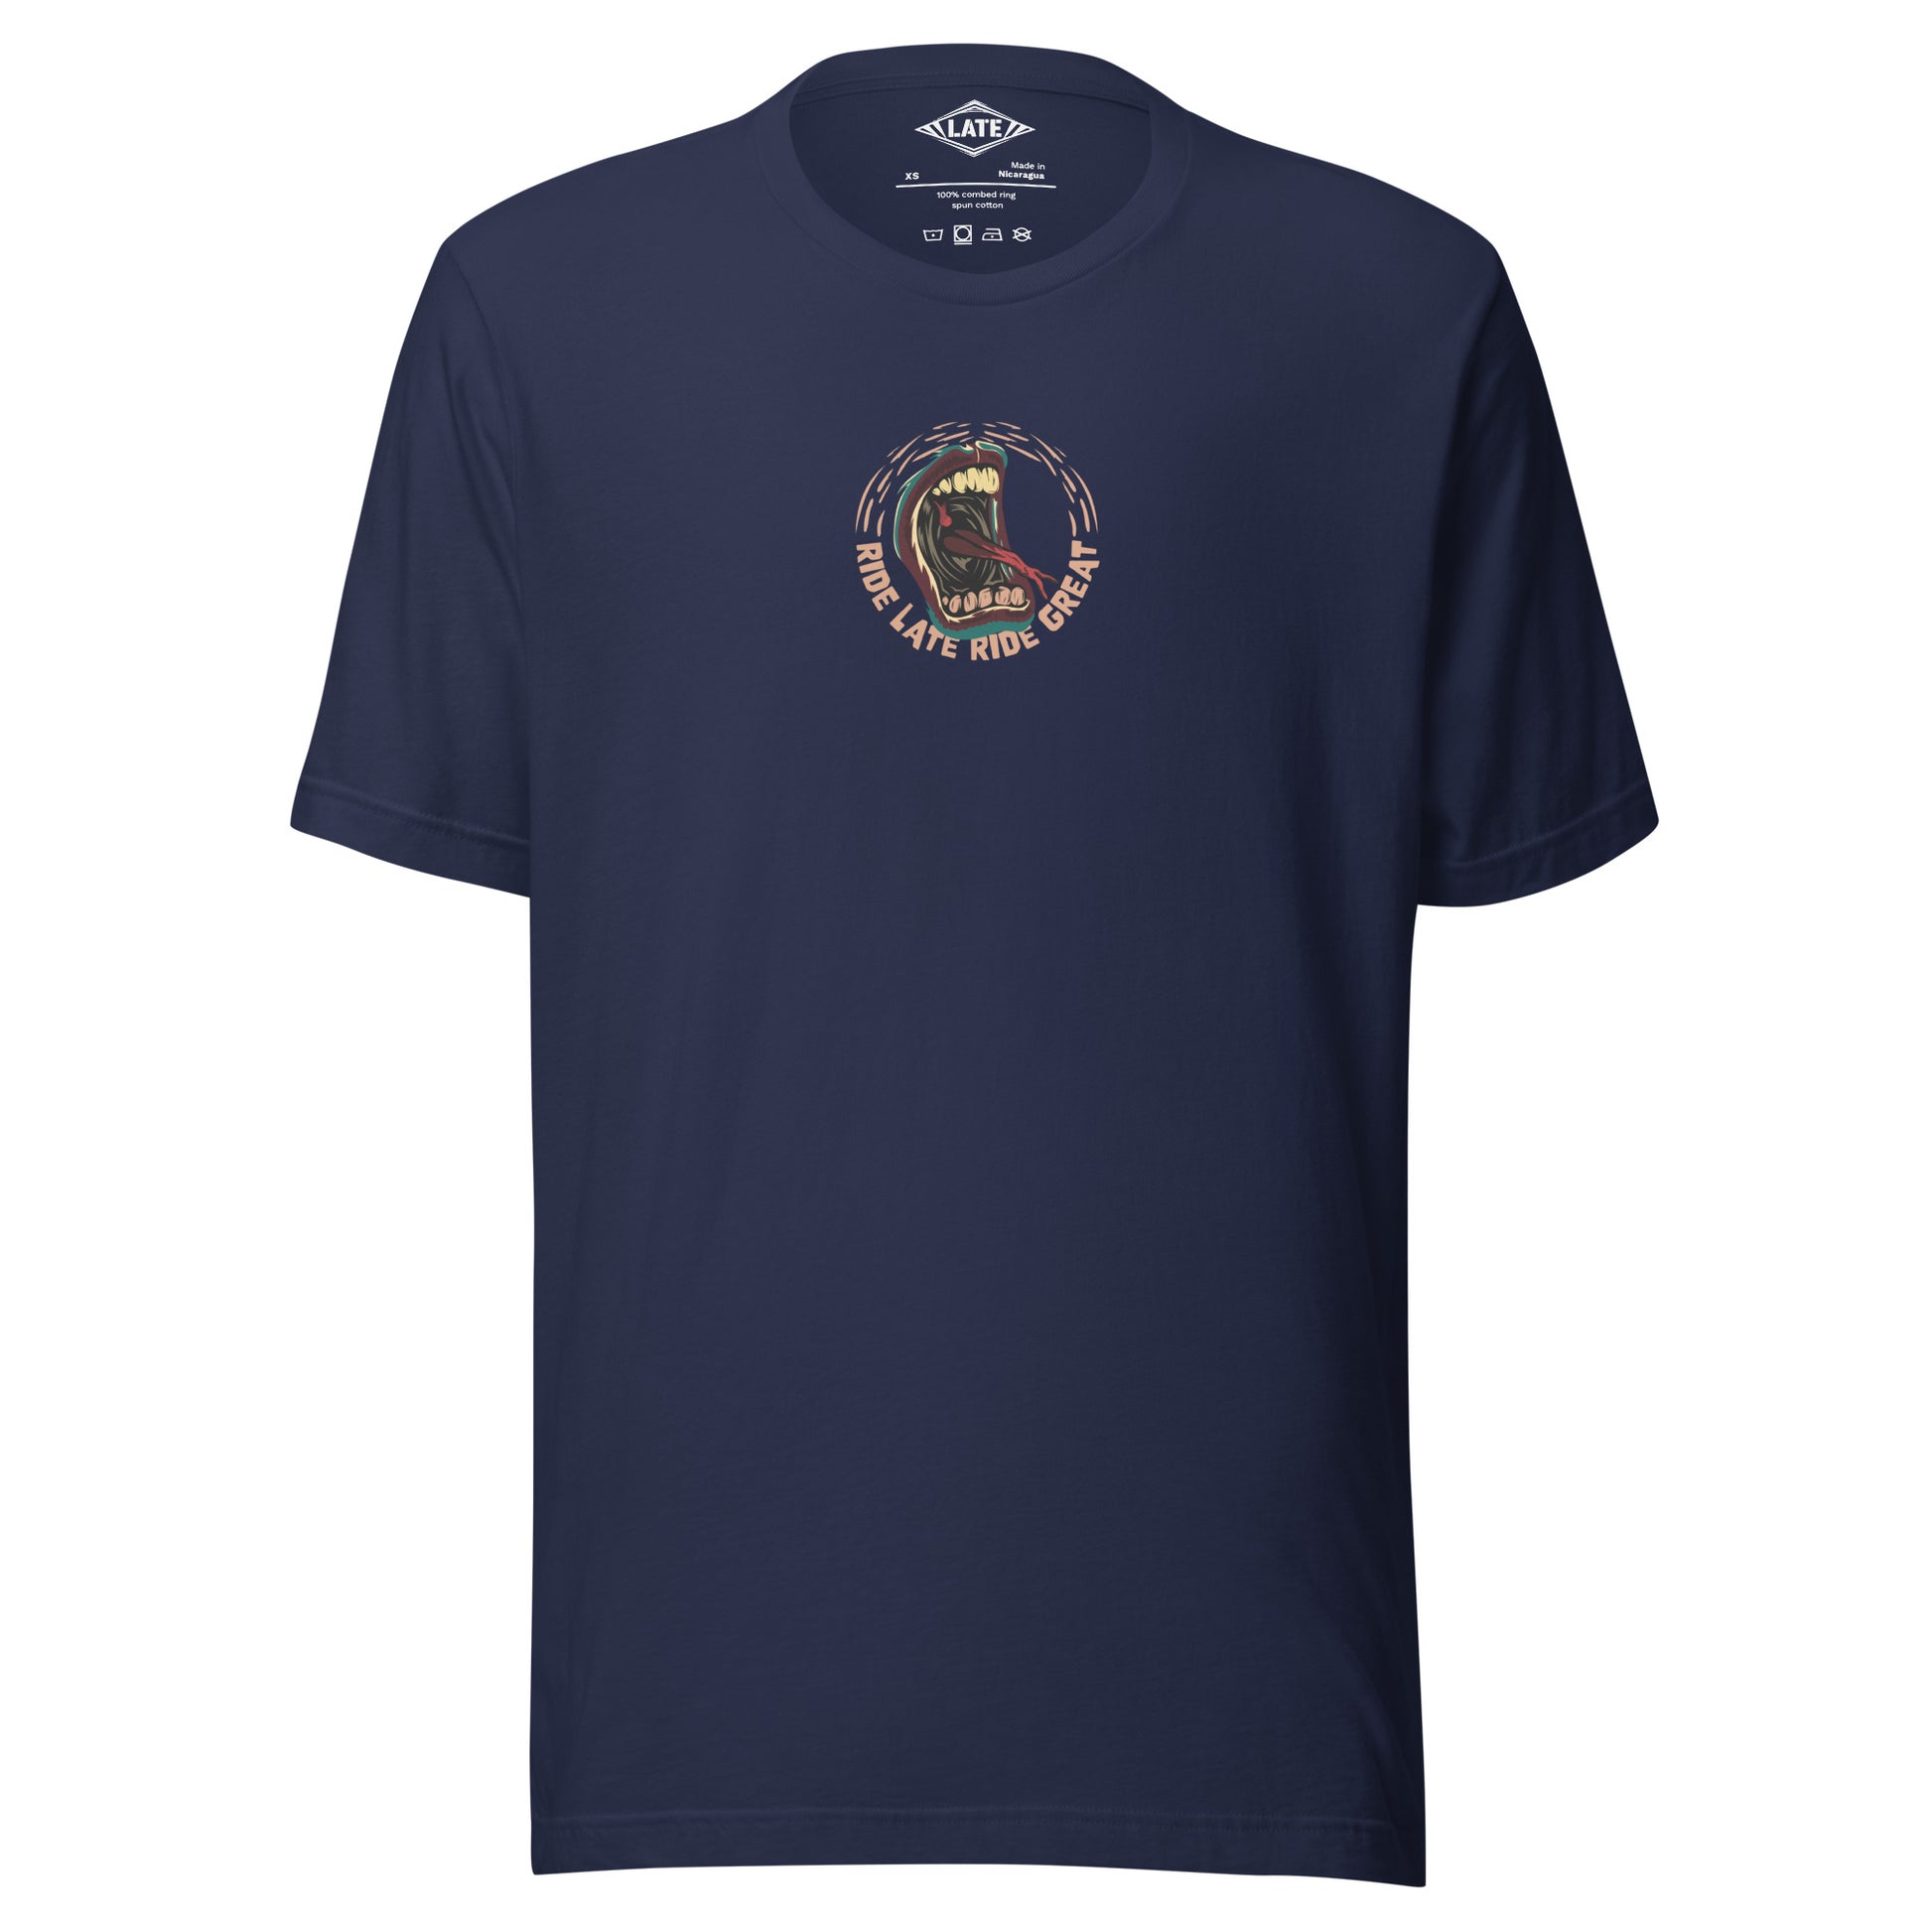 T-Shirt Ride Late Live Great skate style volcom avec un design de bouche qui tire la langue couleur du t-shirt unisex navy